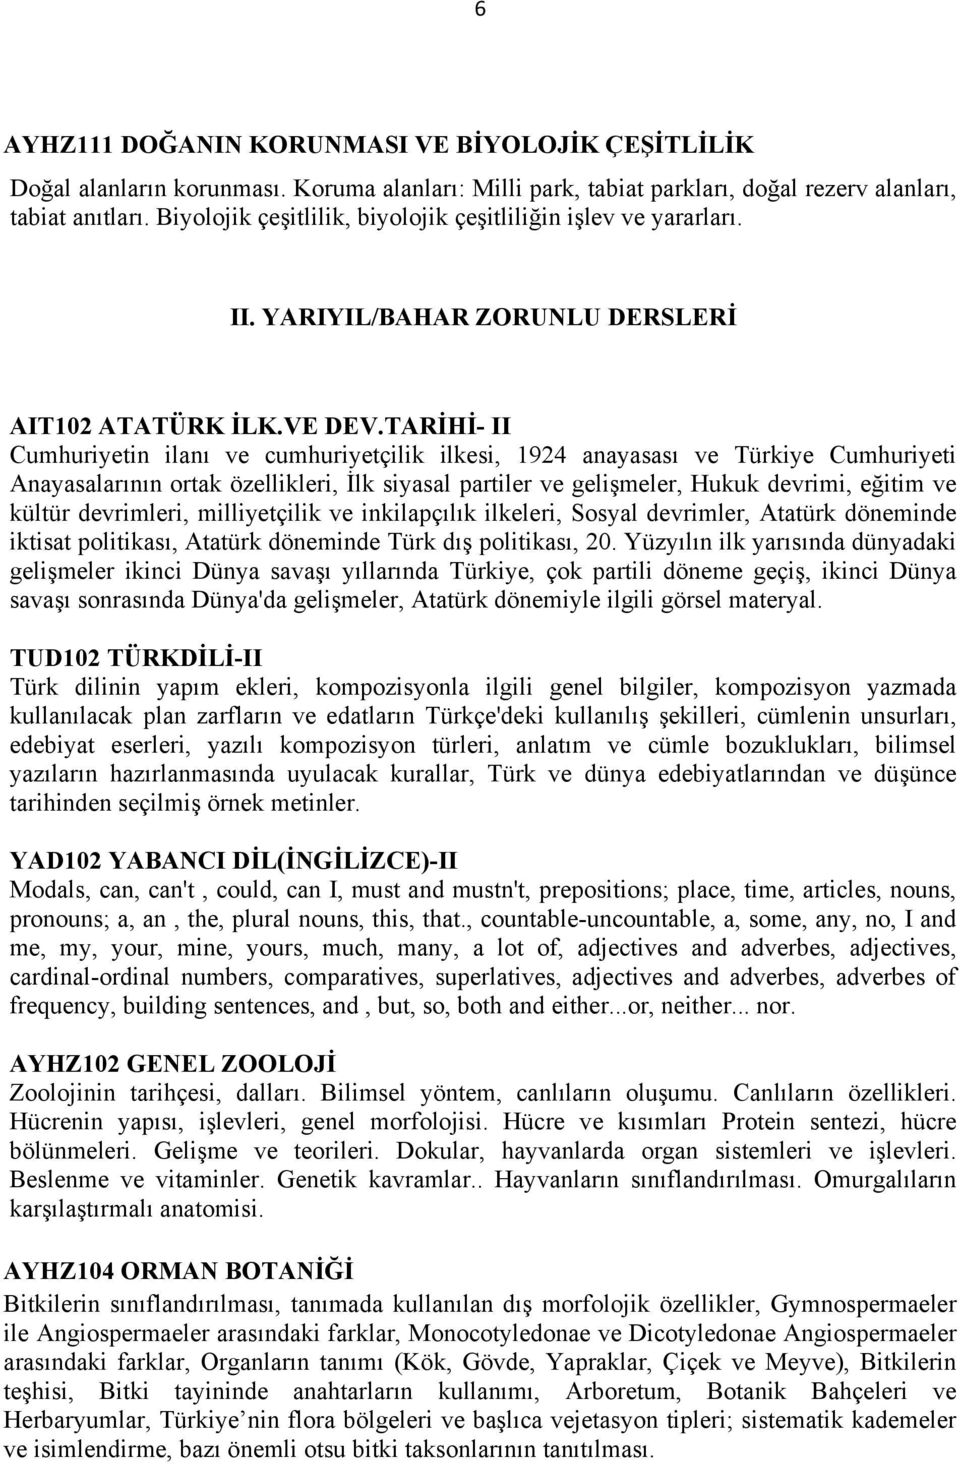 TARİHİ- II Cumhuriyetin ilanı ve cumhuriyetçilik ilkesi, 1924 anayasası ve Türkiye Cumhuriyeti Anayasalarının ortak özellikleri, İlk siyasal partiler ve gelişmeler, Hukuk devrimi, eğitim ve kültür